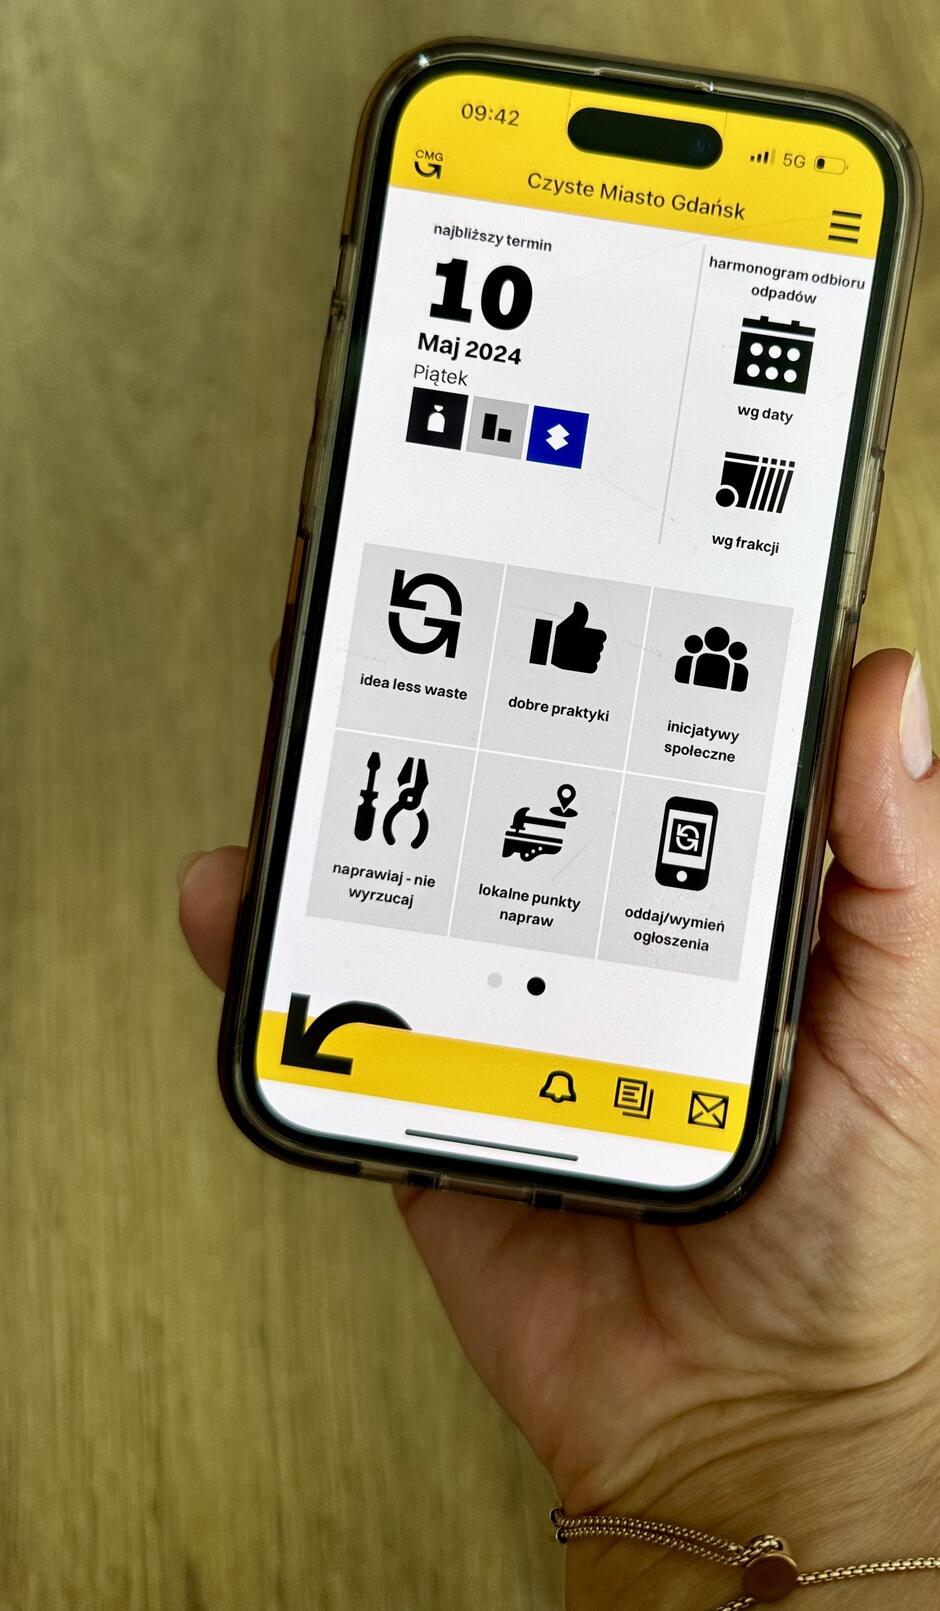 Zdjęcie przedstawia aplikację Czyste Miasto Gdańsk  wyświetlaną na smartfonie trzymanym w dłoni osoby. Ekran główny aplikacji jest zaprojektowany w estetyce z dominującymi żółtymi i czarnymi kolorami, co czyni interfejs wyraźnym i czytelnym.

Na ekranie wyświetlone są różne ikony funkcji aplikacji:

Najbliższy termin odnośnie daty ( 10 Maj 2024, Piątek ) z ikonami dotyczącymi śmieci, które mają zostać odebrane tego dnia.
Harmonogram odbioru odpadów.
Ikonę  idea less waste  sugerującą funkcje związane z minimalizacją odpadów.
Ikonę  dobre praktyki , która prawdopodobnie prowadzi do porad na temat zrównoważonego życia.
Sekcję  inijcatywy społeczne  z ikoną grupy ludzi, wskazującą na funkcje społecznościowe aplikacji.
Opcję  naprawiaj - nie wyrzucaj  z narzędziami, sugerującą funkcje pomagające znaleźć lokalne punkty napraw.
Ikonę  oddaj/wymień ogłoszenia , która najprawdopodobniej umożliwia użytkownikom dodawanie ogłoszeń o wymianie lub oddaniu przedmiotów.
Aplikacja jest przykładem narzędzia cyfrowego, które ma na celu wspieranie działań na rzecz zrównoważonego rozwoju i minimalizacji odpadów poprzez praktyczne rozwiązania i społeczność lokalną.